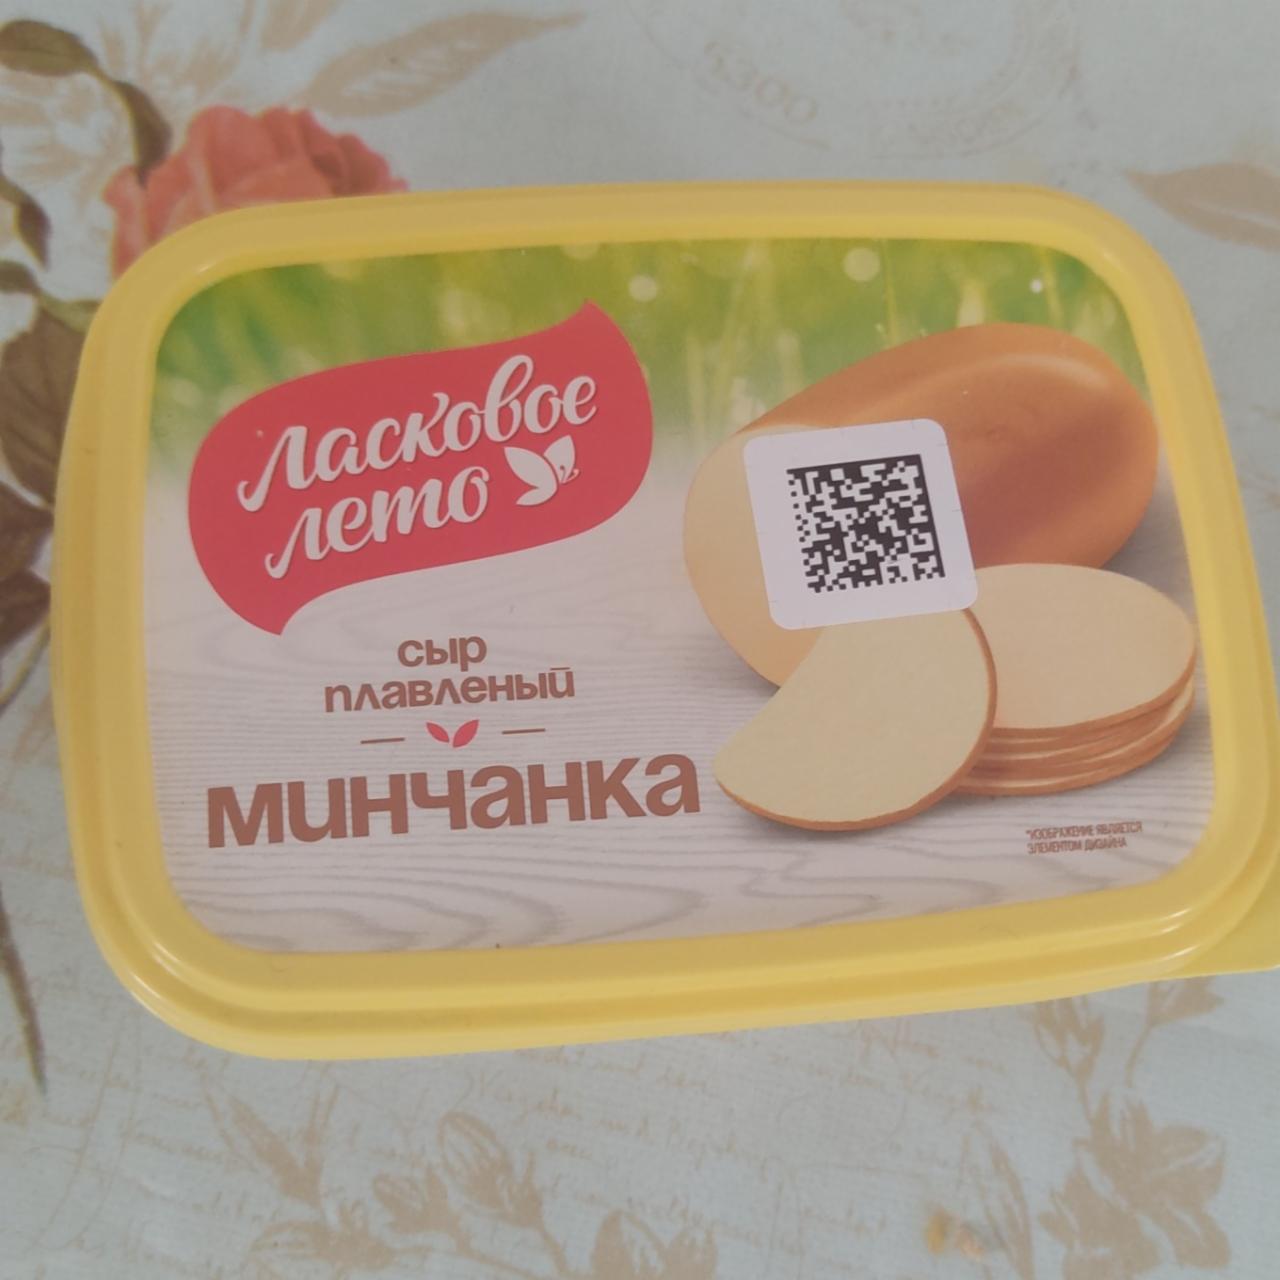 Фото - сыр плавленый колбасный Минчанка Ласковое лето